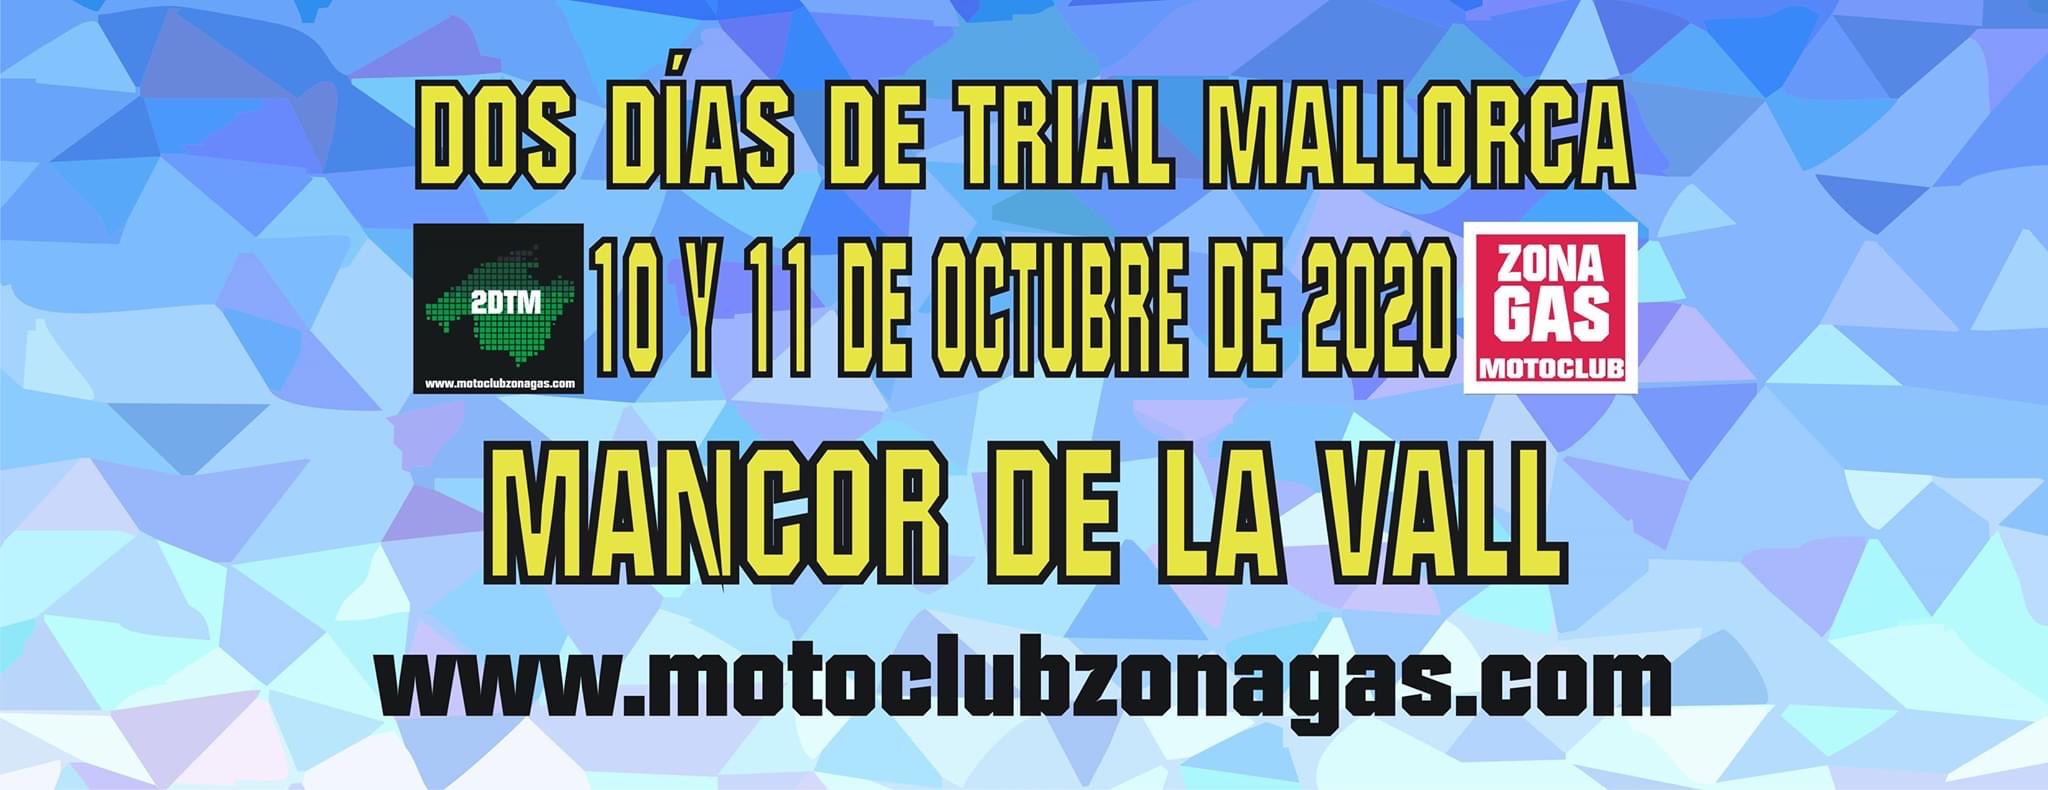 Dos Días de Trial Mallorca 2020